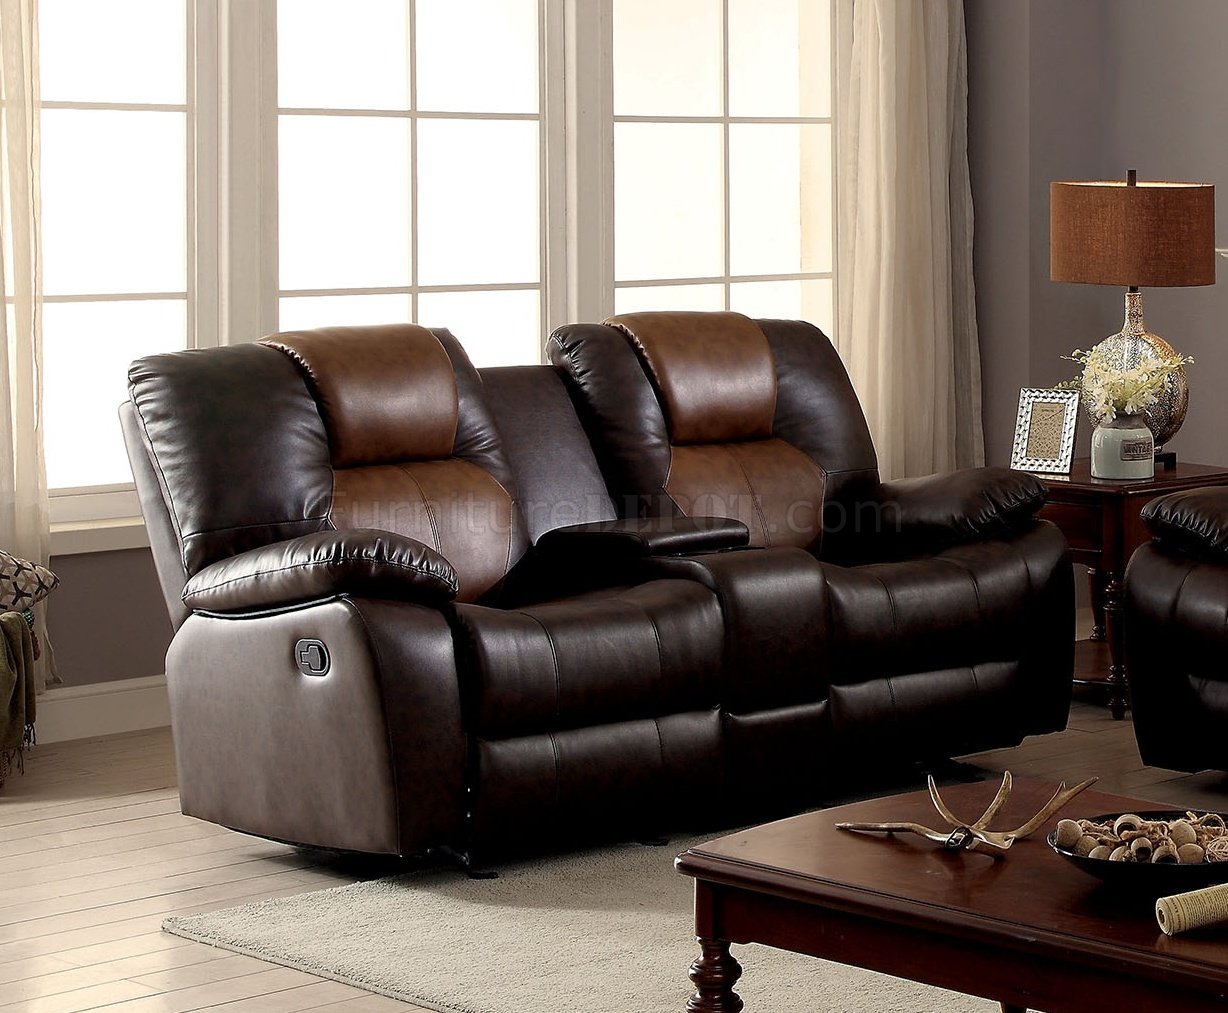 2 tone brown leather sofa